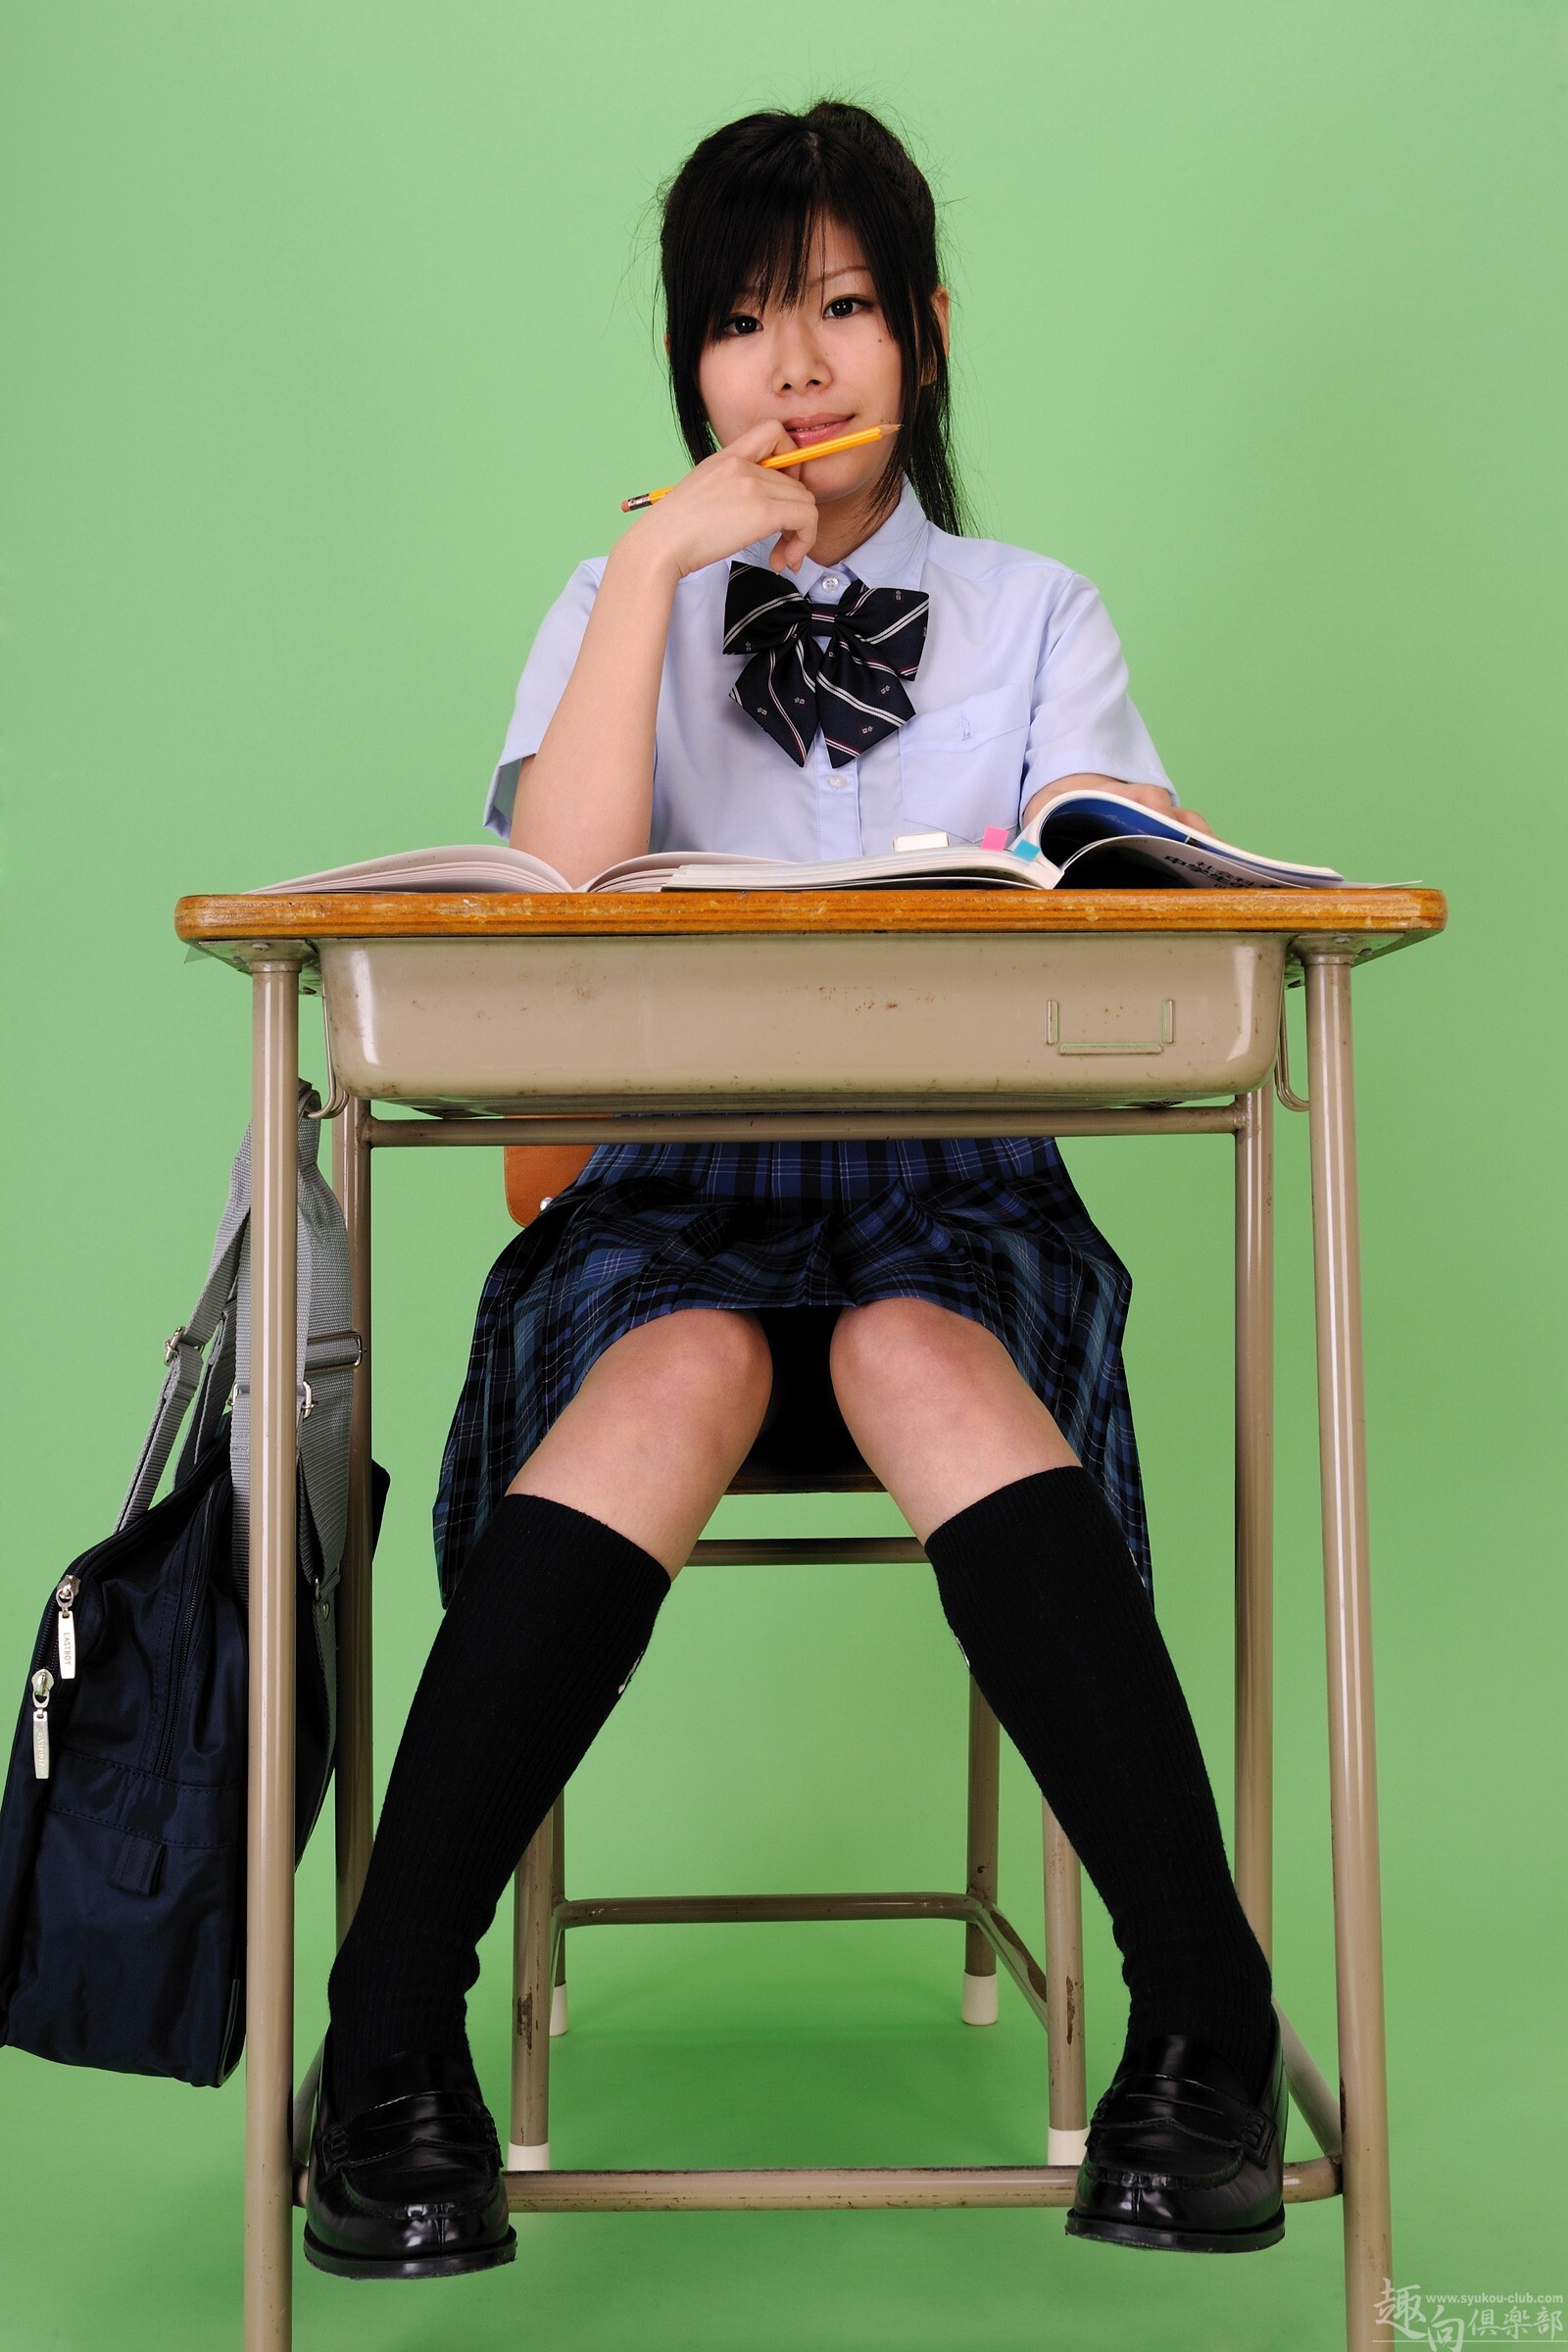 [syukou club] 2015.07.09 digi girl no.225 school girl